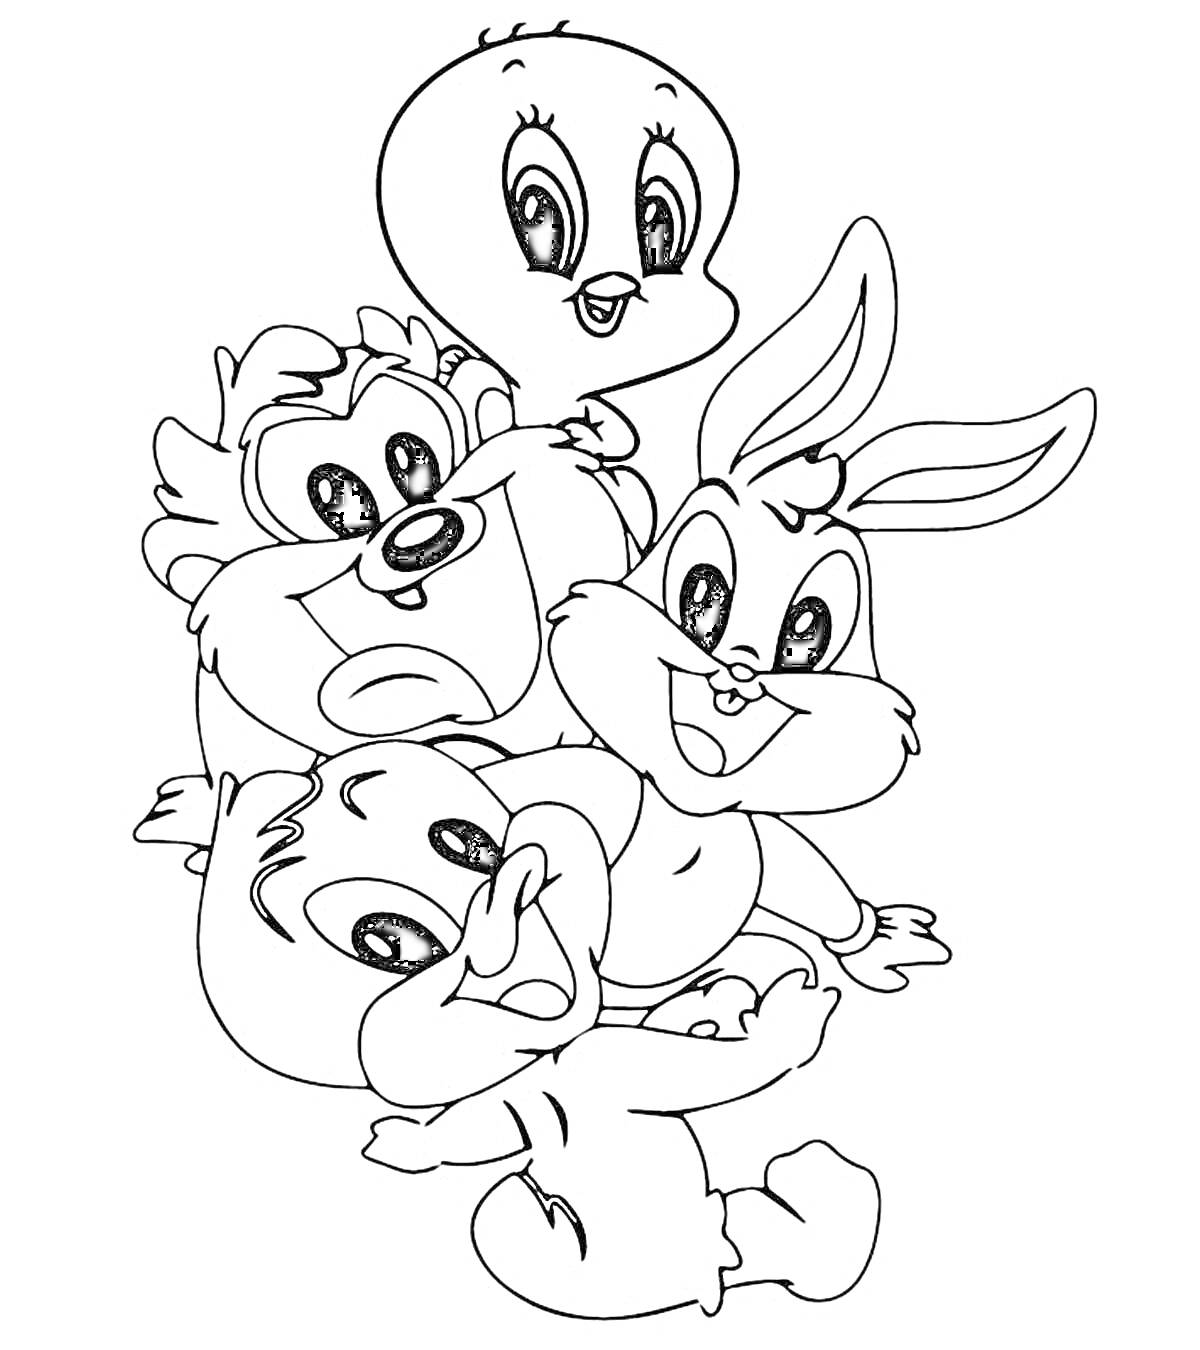 Раскраска Четыре мультяшных персонажа: цыпленок, белка, кролик и утенок